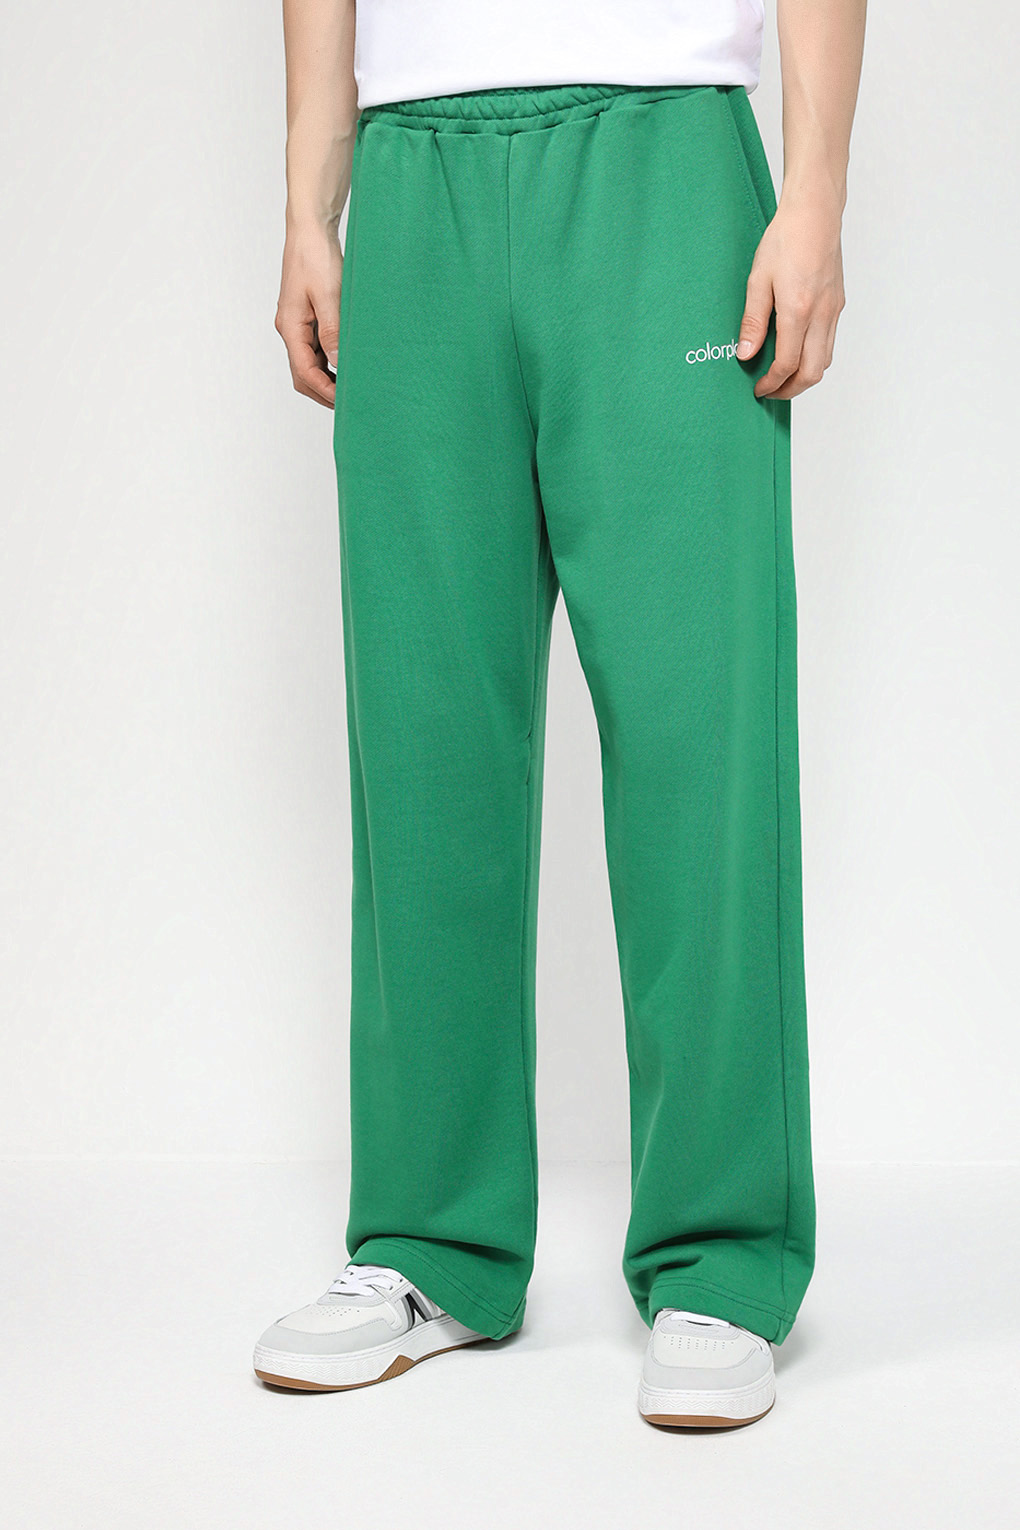 Спортивные брюки мужские COLORPLAY CP23072306-004 зеленые S